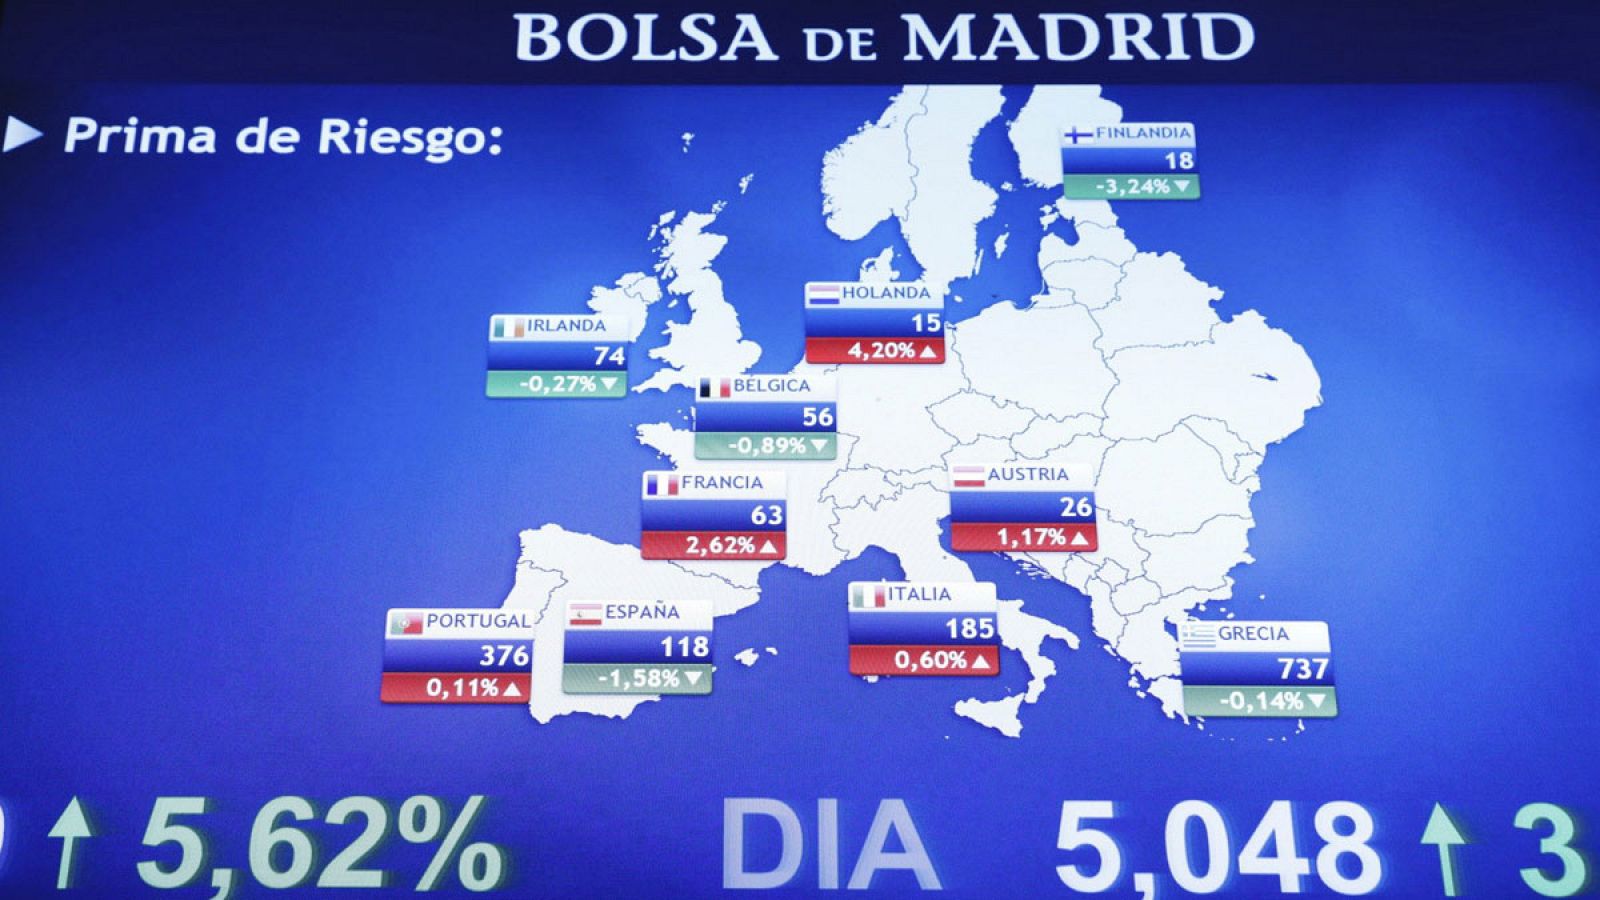 Panel que muestra la prima de riesgo española junto a la de otros países europeos en la Bolsa de Madrid.